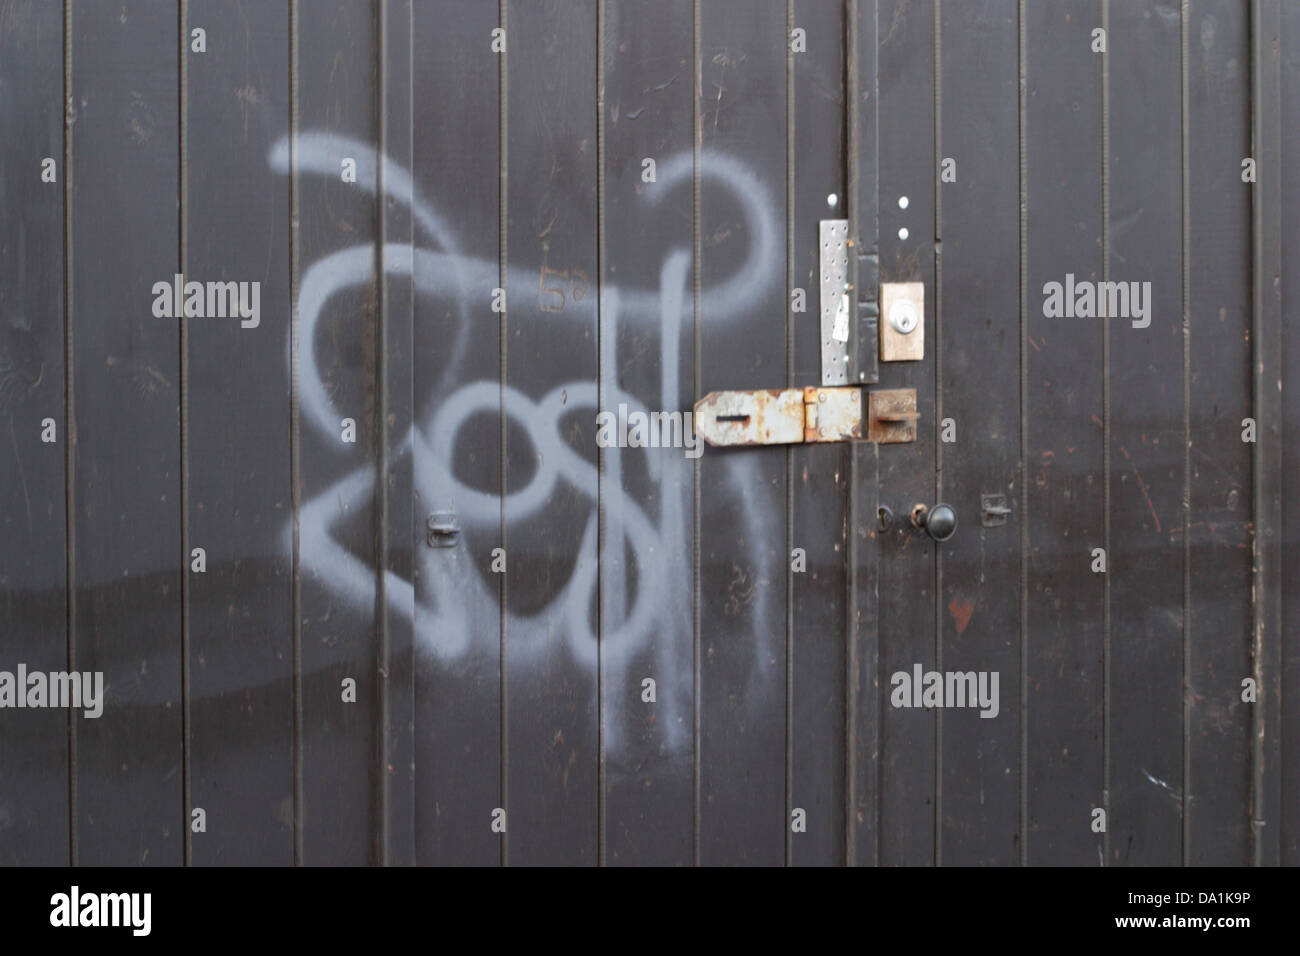 Zurück Holztor mit spritzlackiert Grafitti, zeigt Aoso Hasp und Grundnahrungsmittel, Türgriff, Sperre. Graffiti ist weiß lackiert auf. Stockfoto